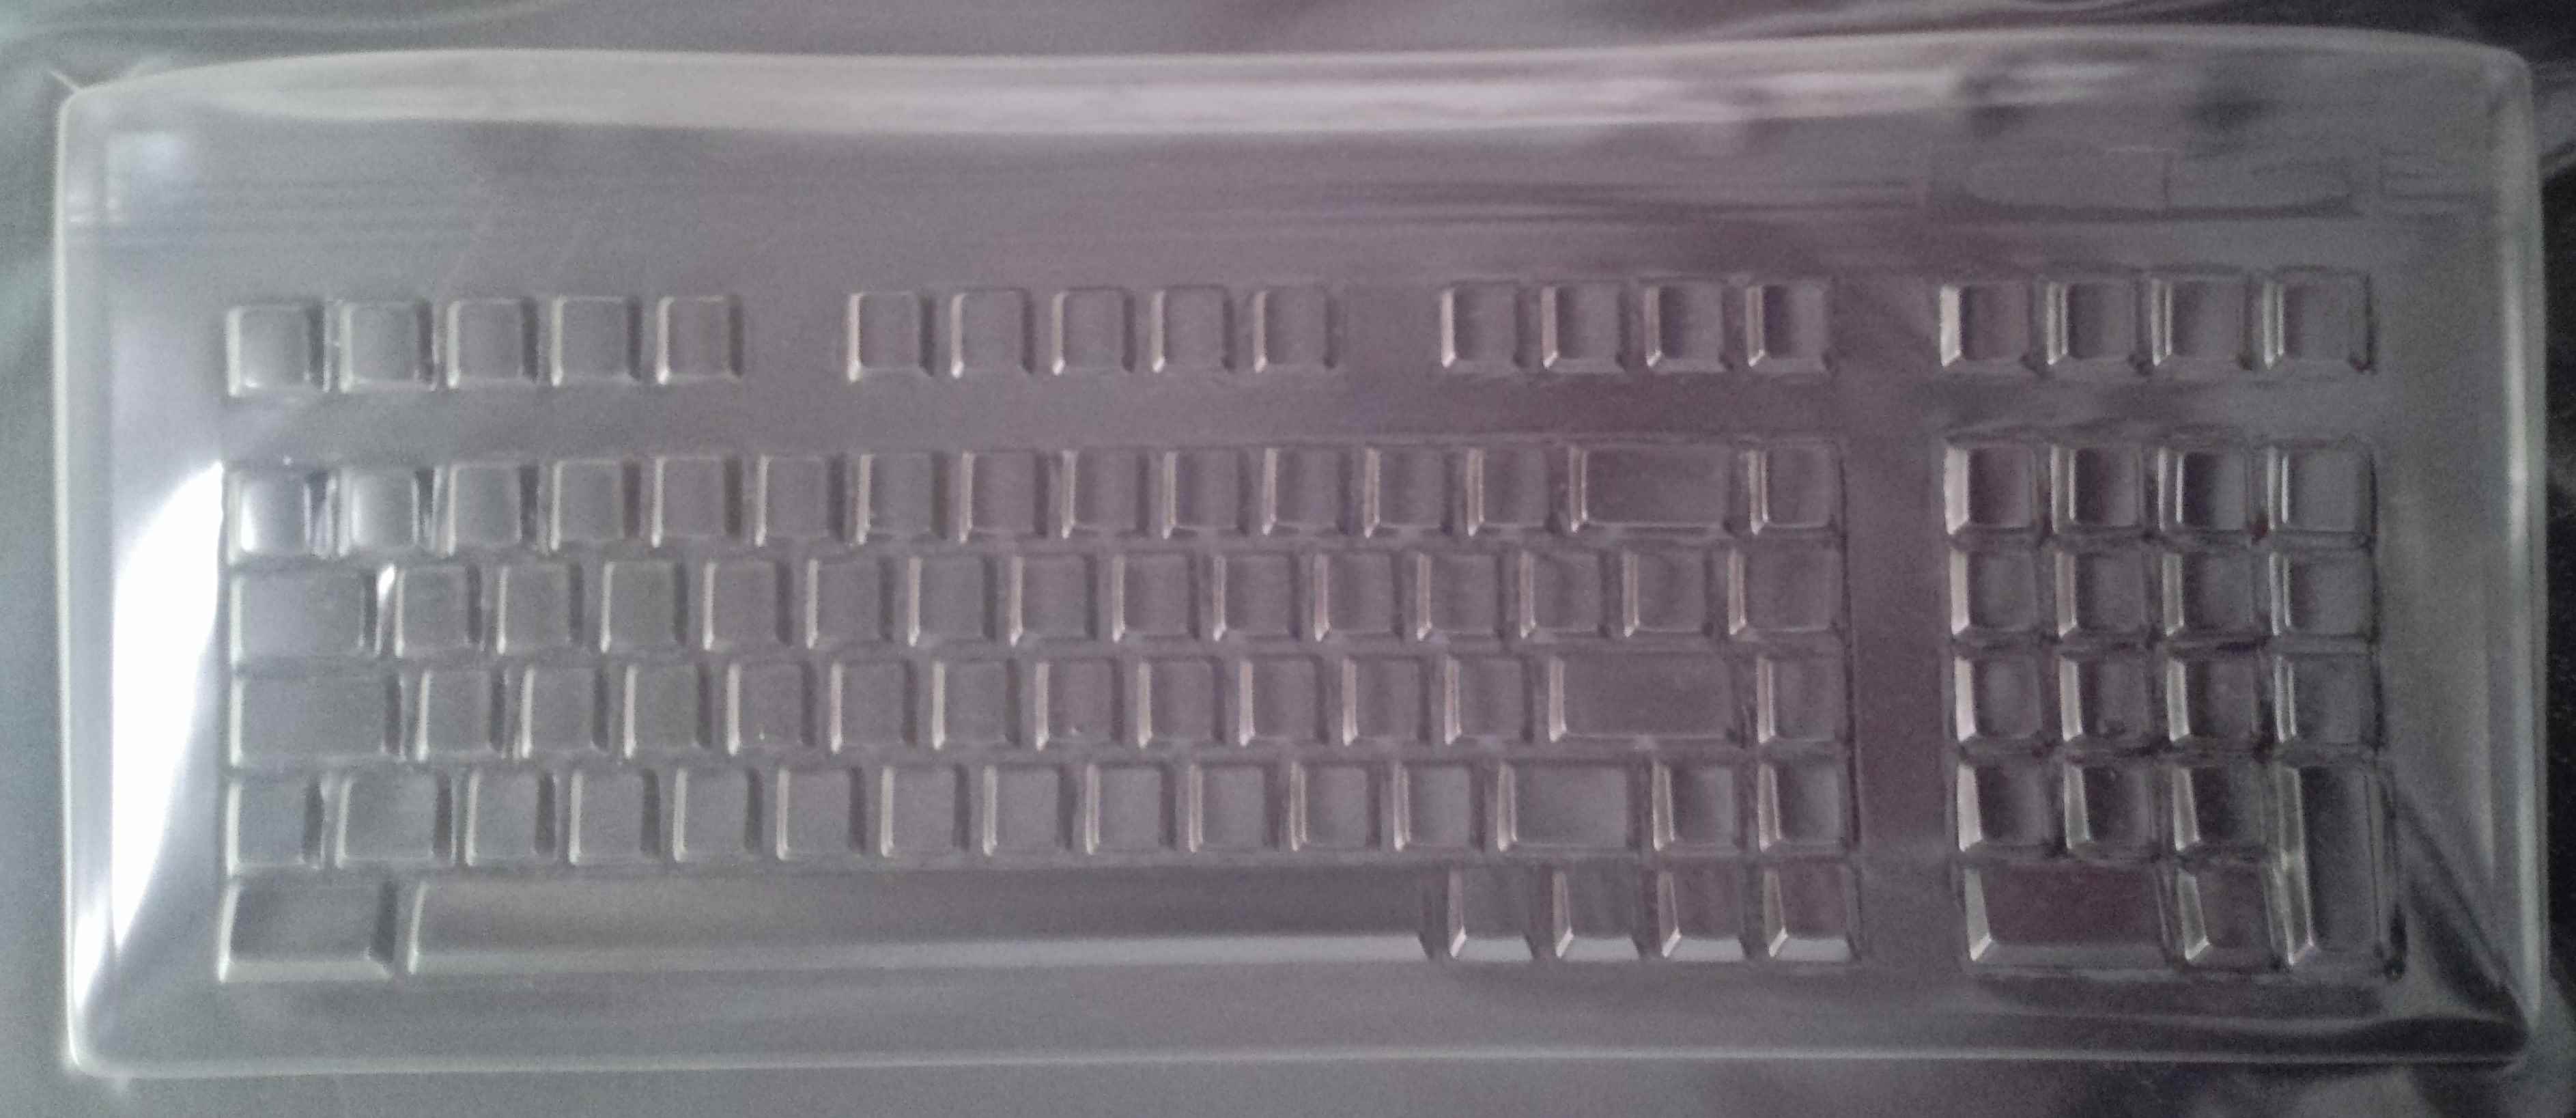 Siemens DT60 Keyboard Cover